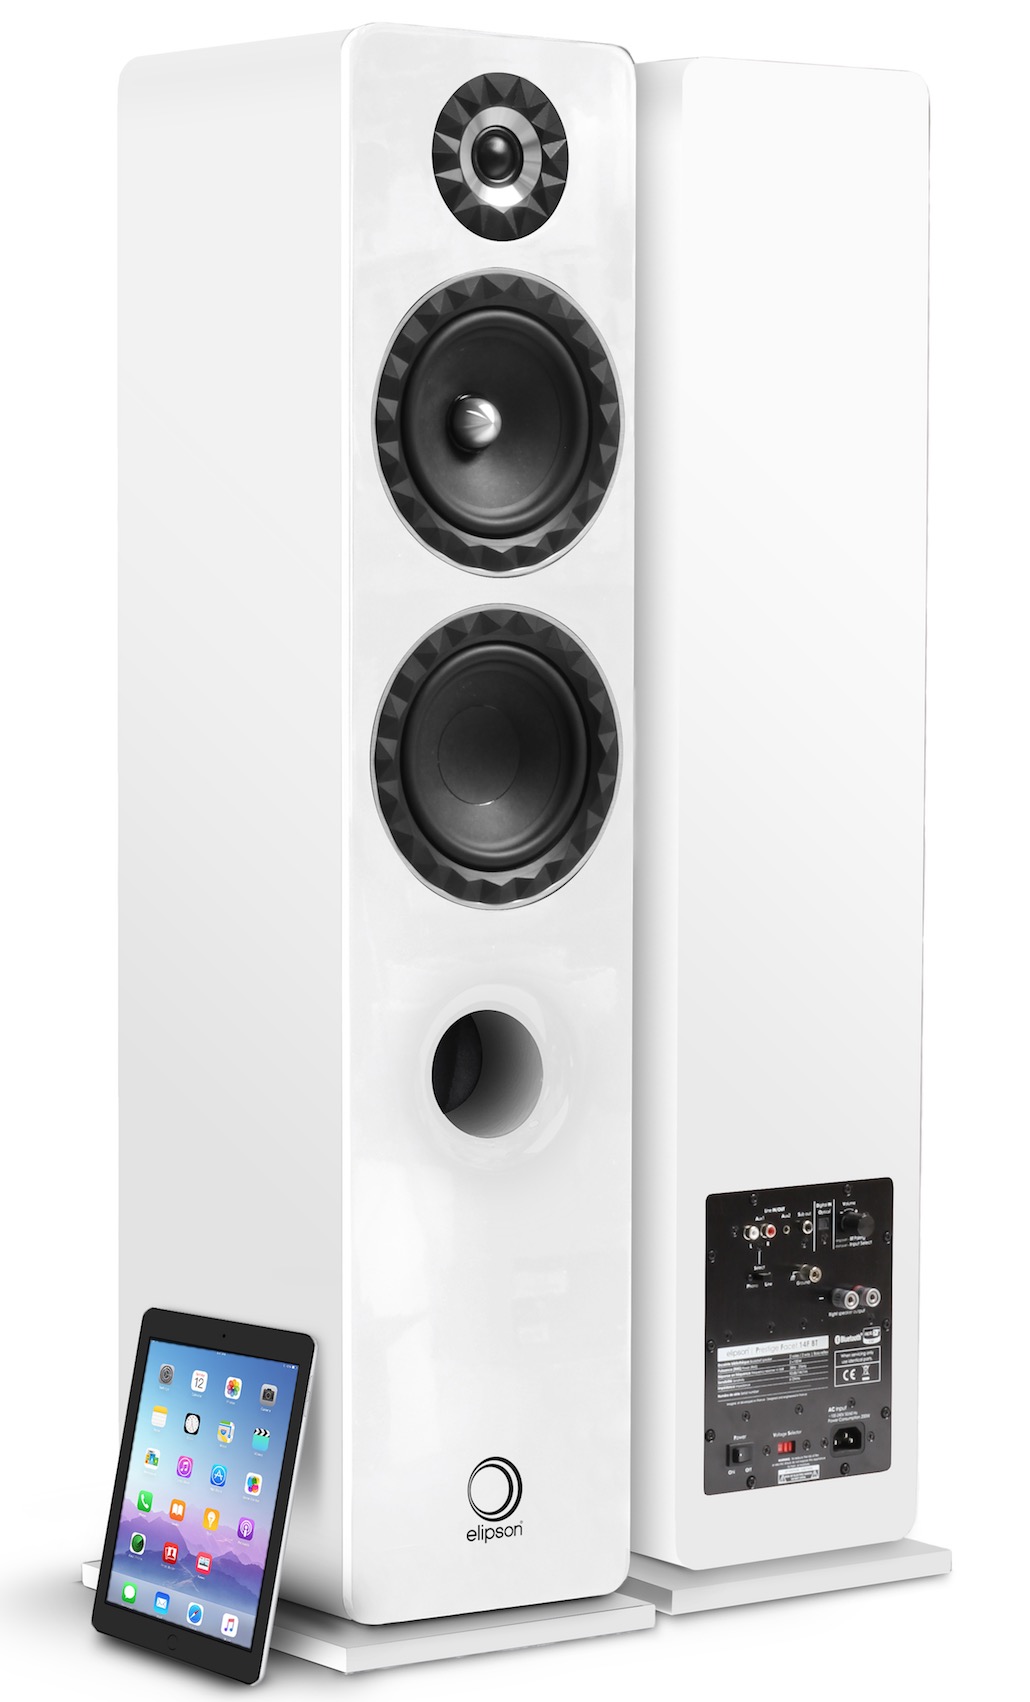 Elipson Facet speakers feature Chromecast